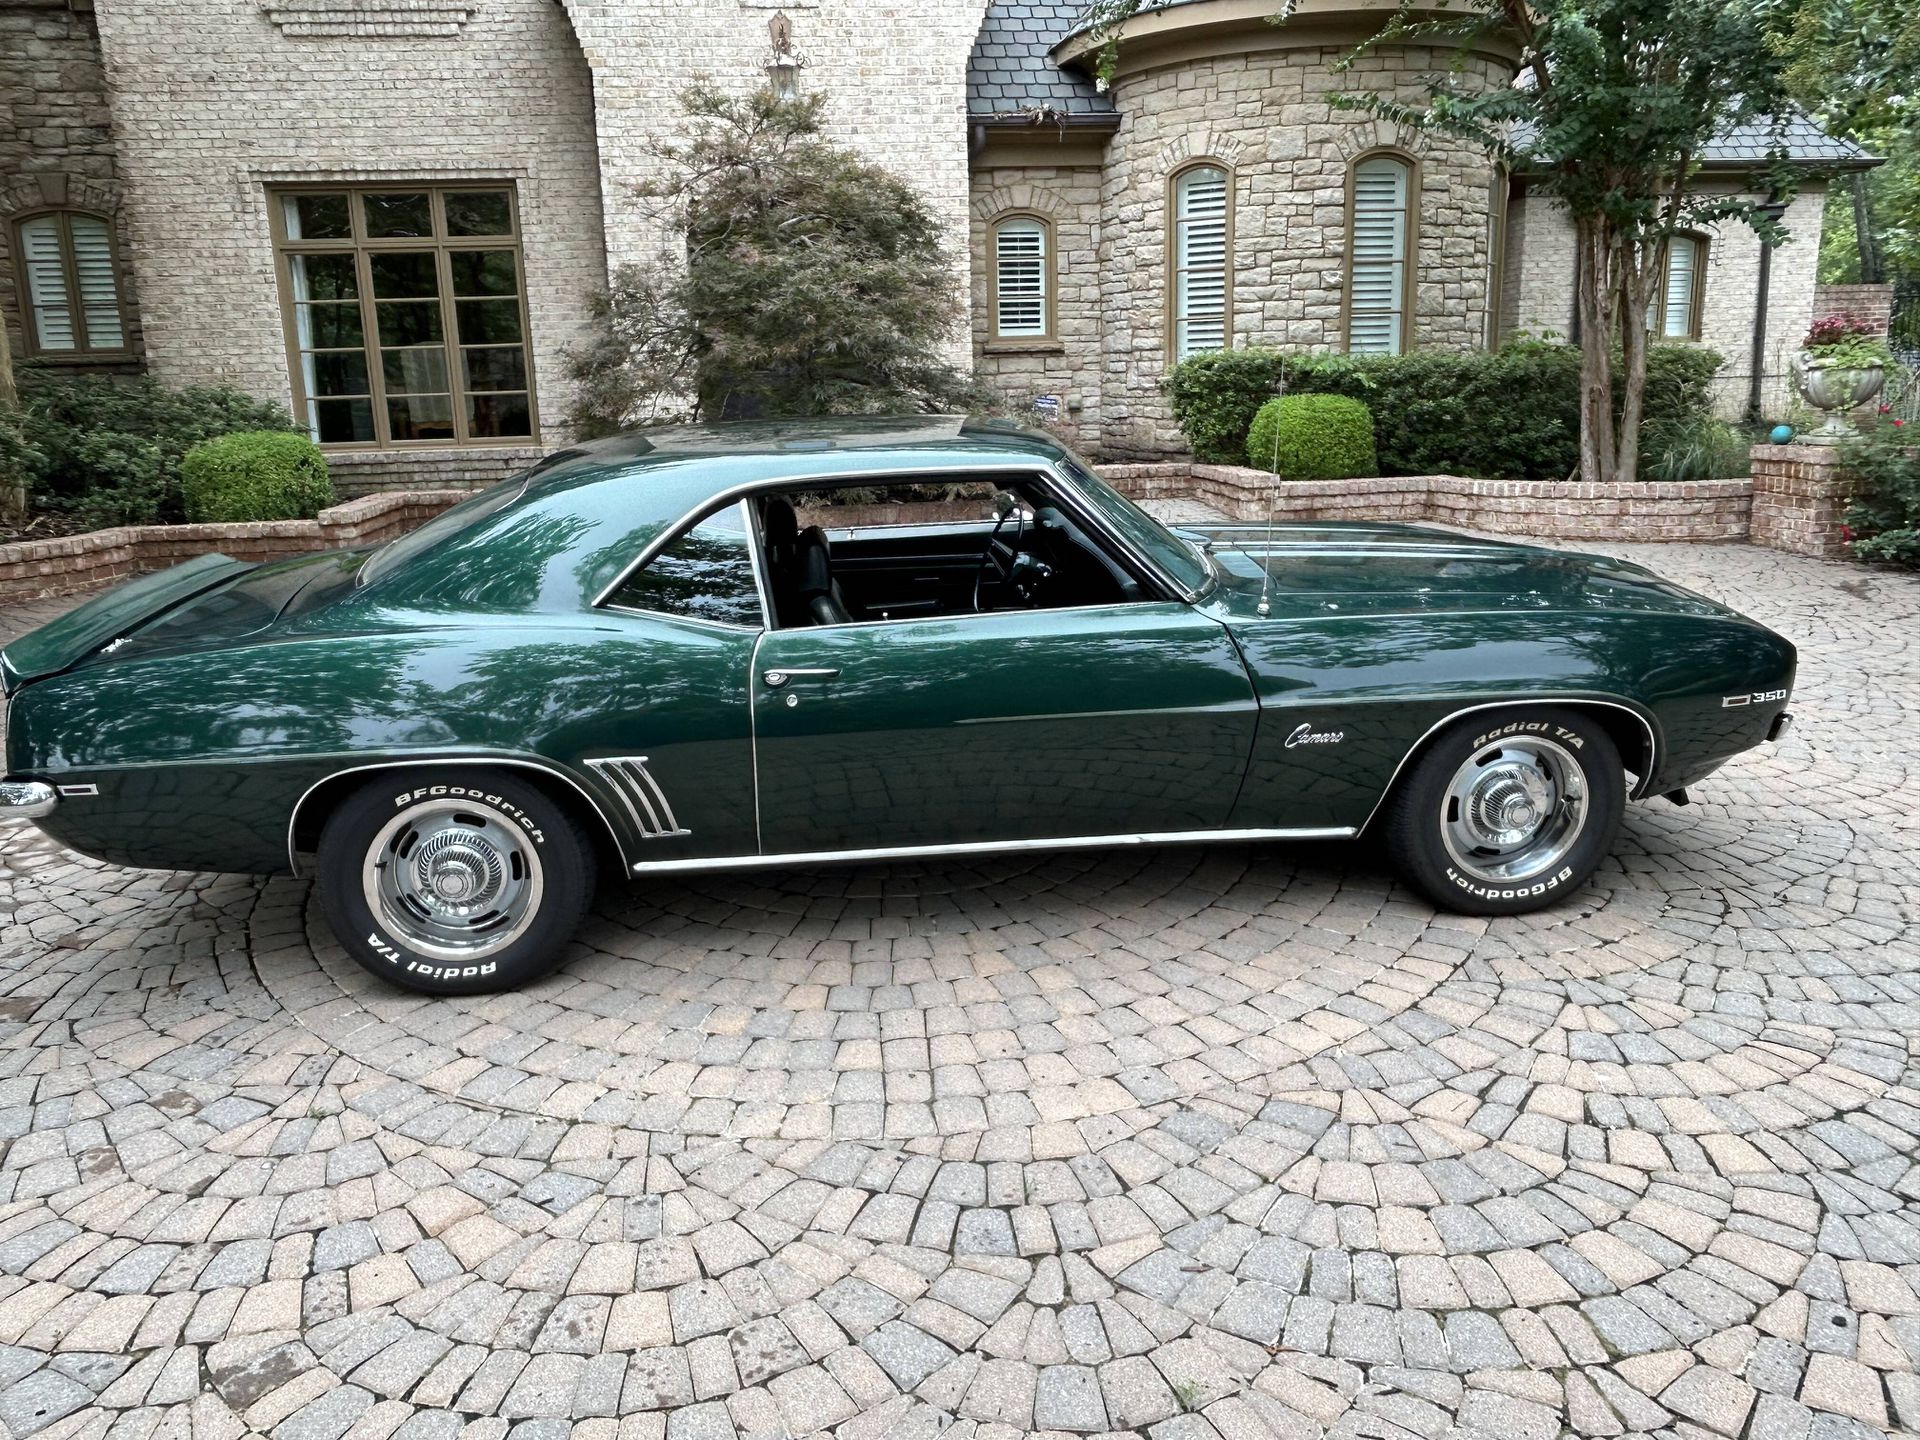 The 1969 Chevrolet Camaro